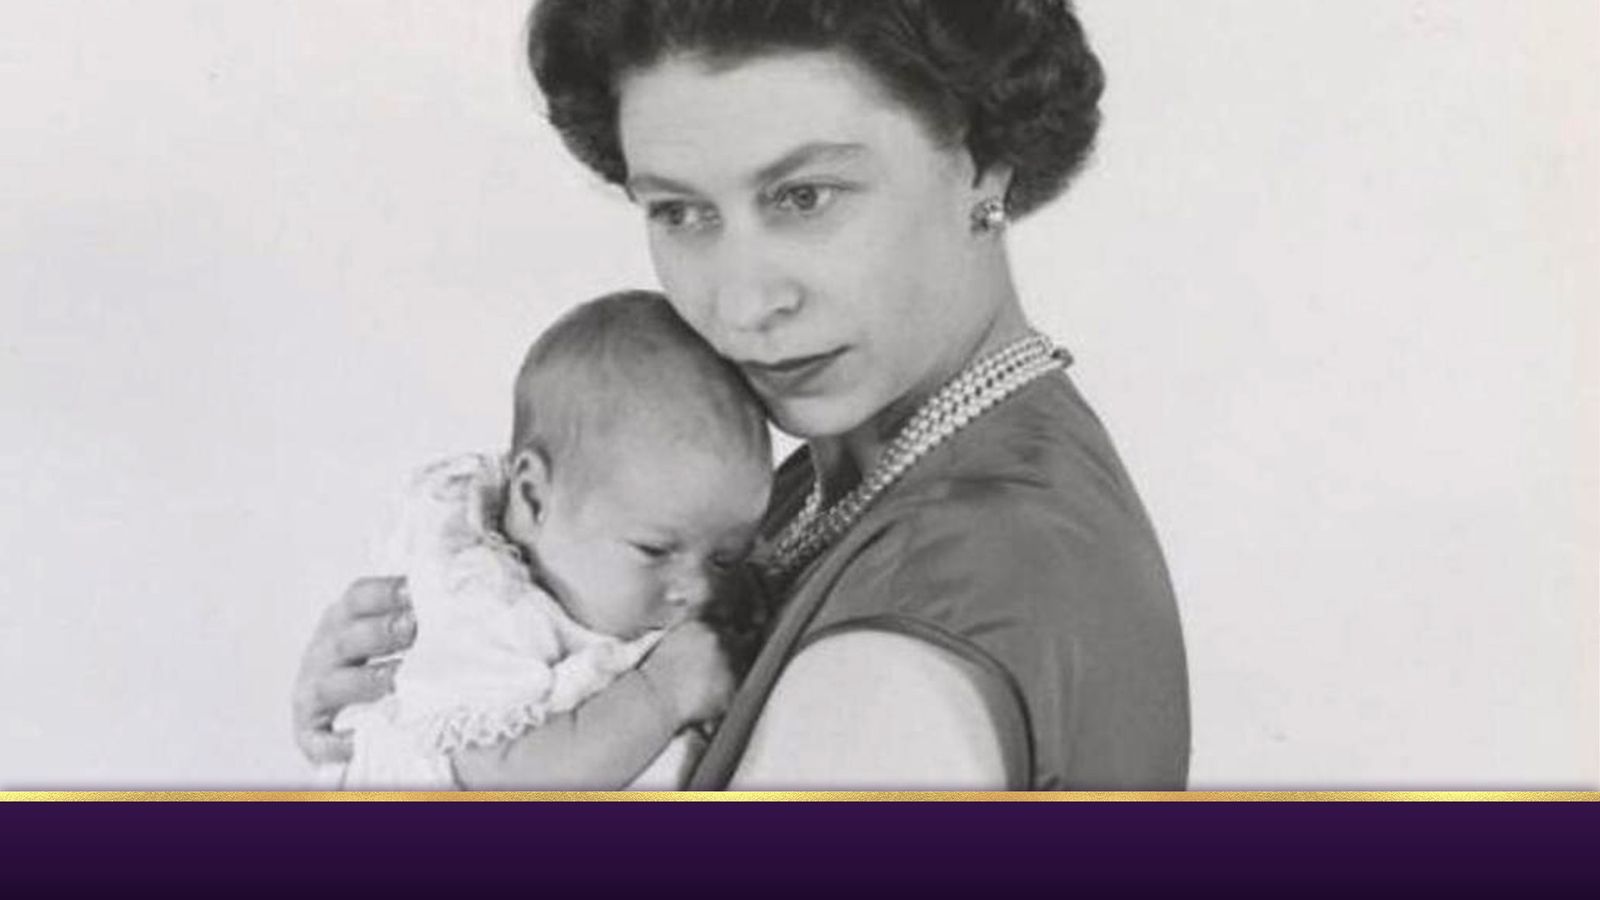 الأمير أندرو يثني على الملكة: “سأجعلك دائمًا قريبًا من قلبي” |  أخبار المملكة المتحدة